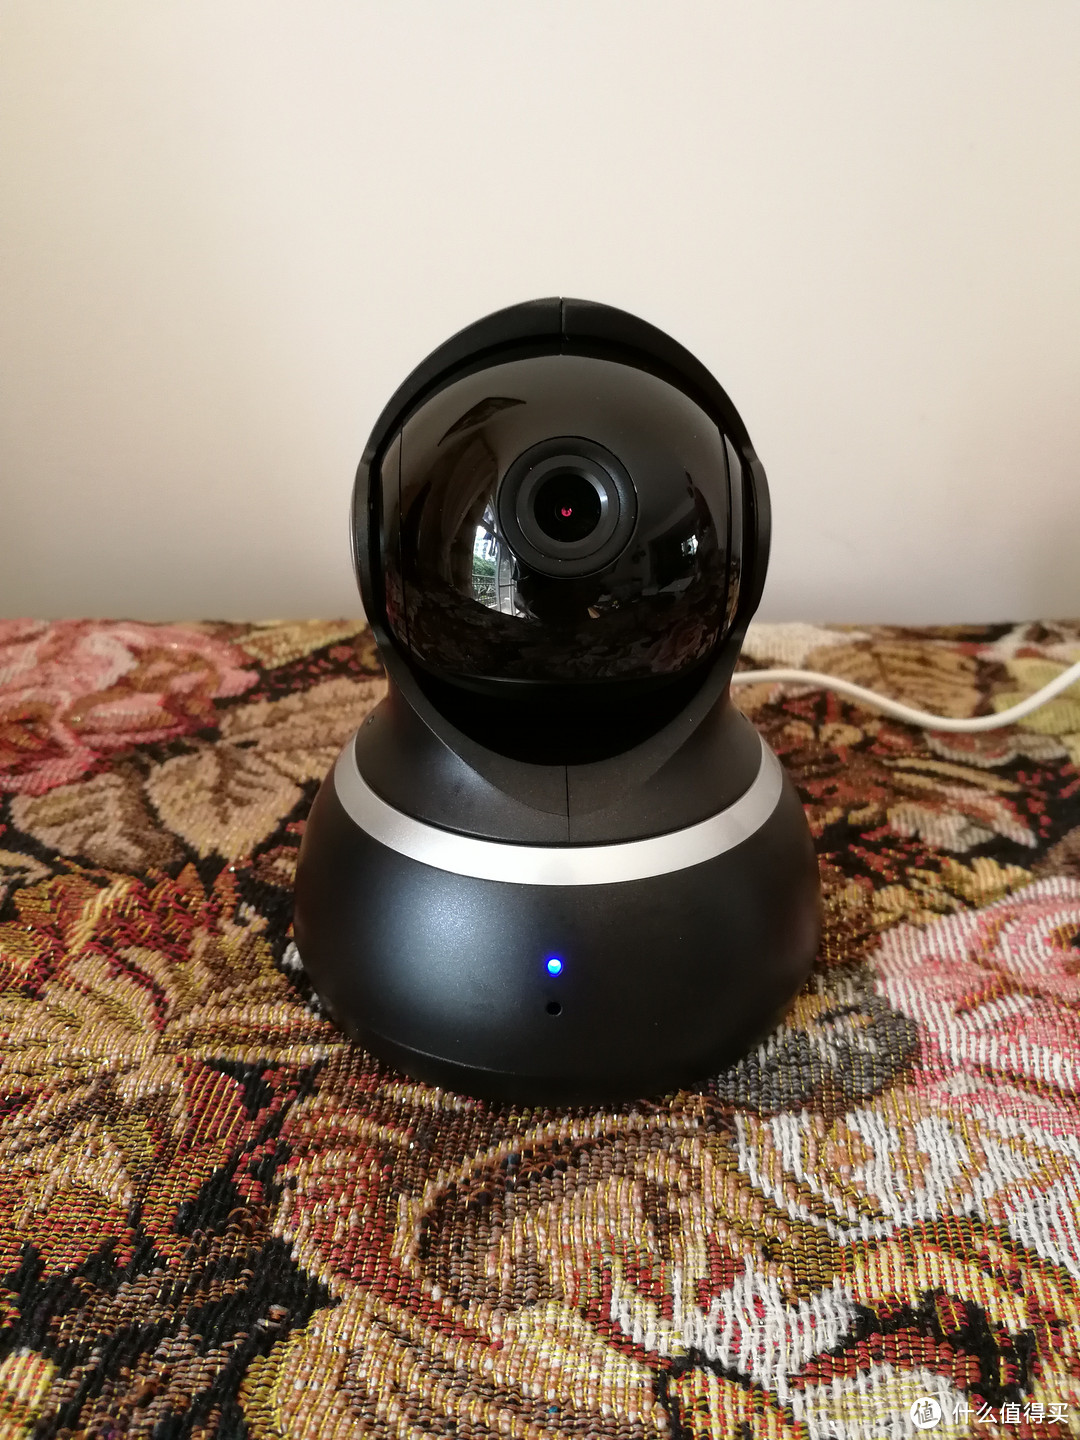 方便的家用监控工具—YI 小蚁 1080P 智能摄像机  开箱